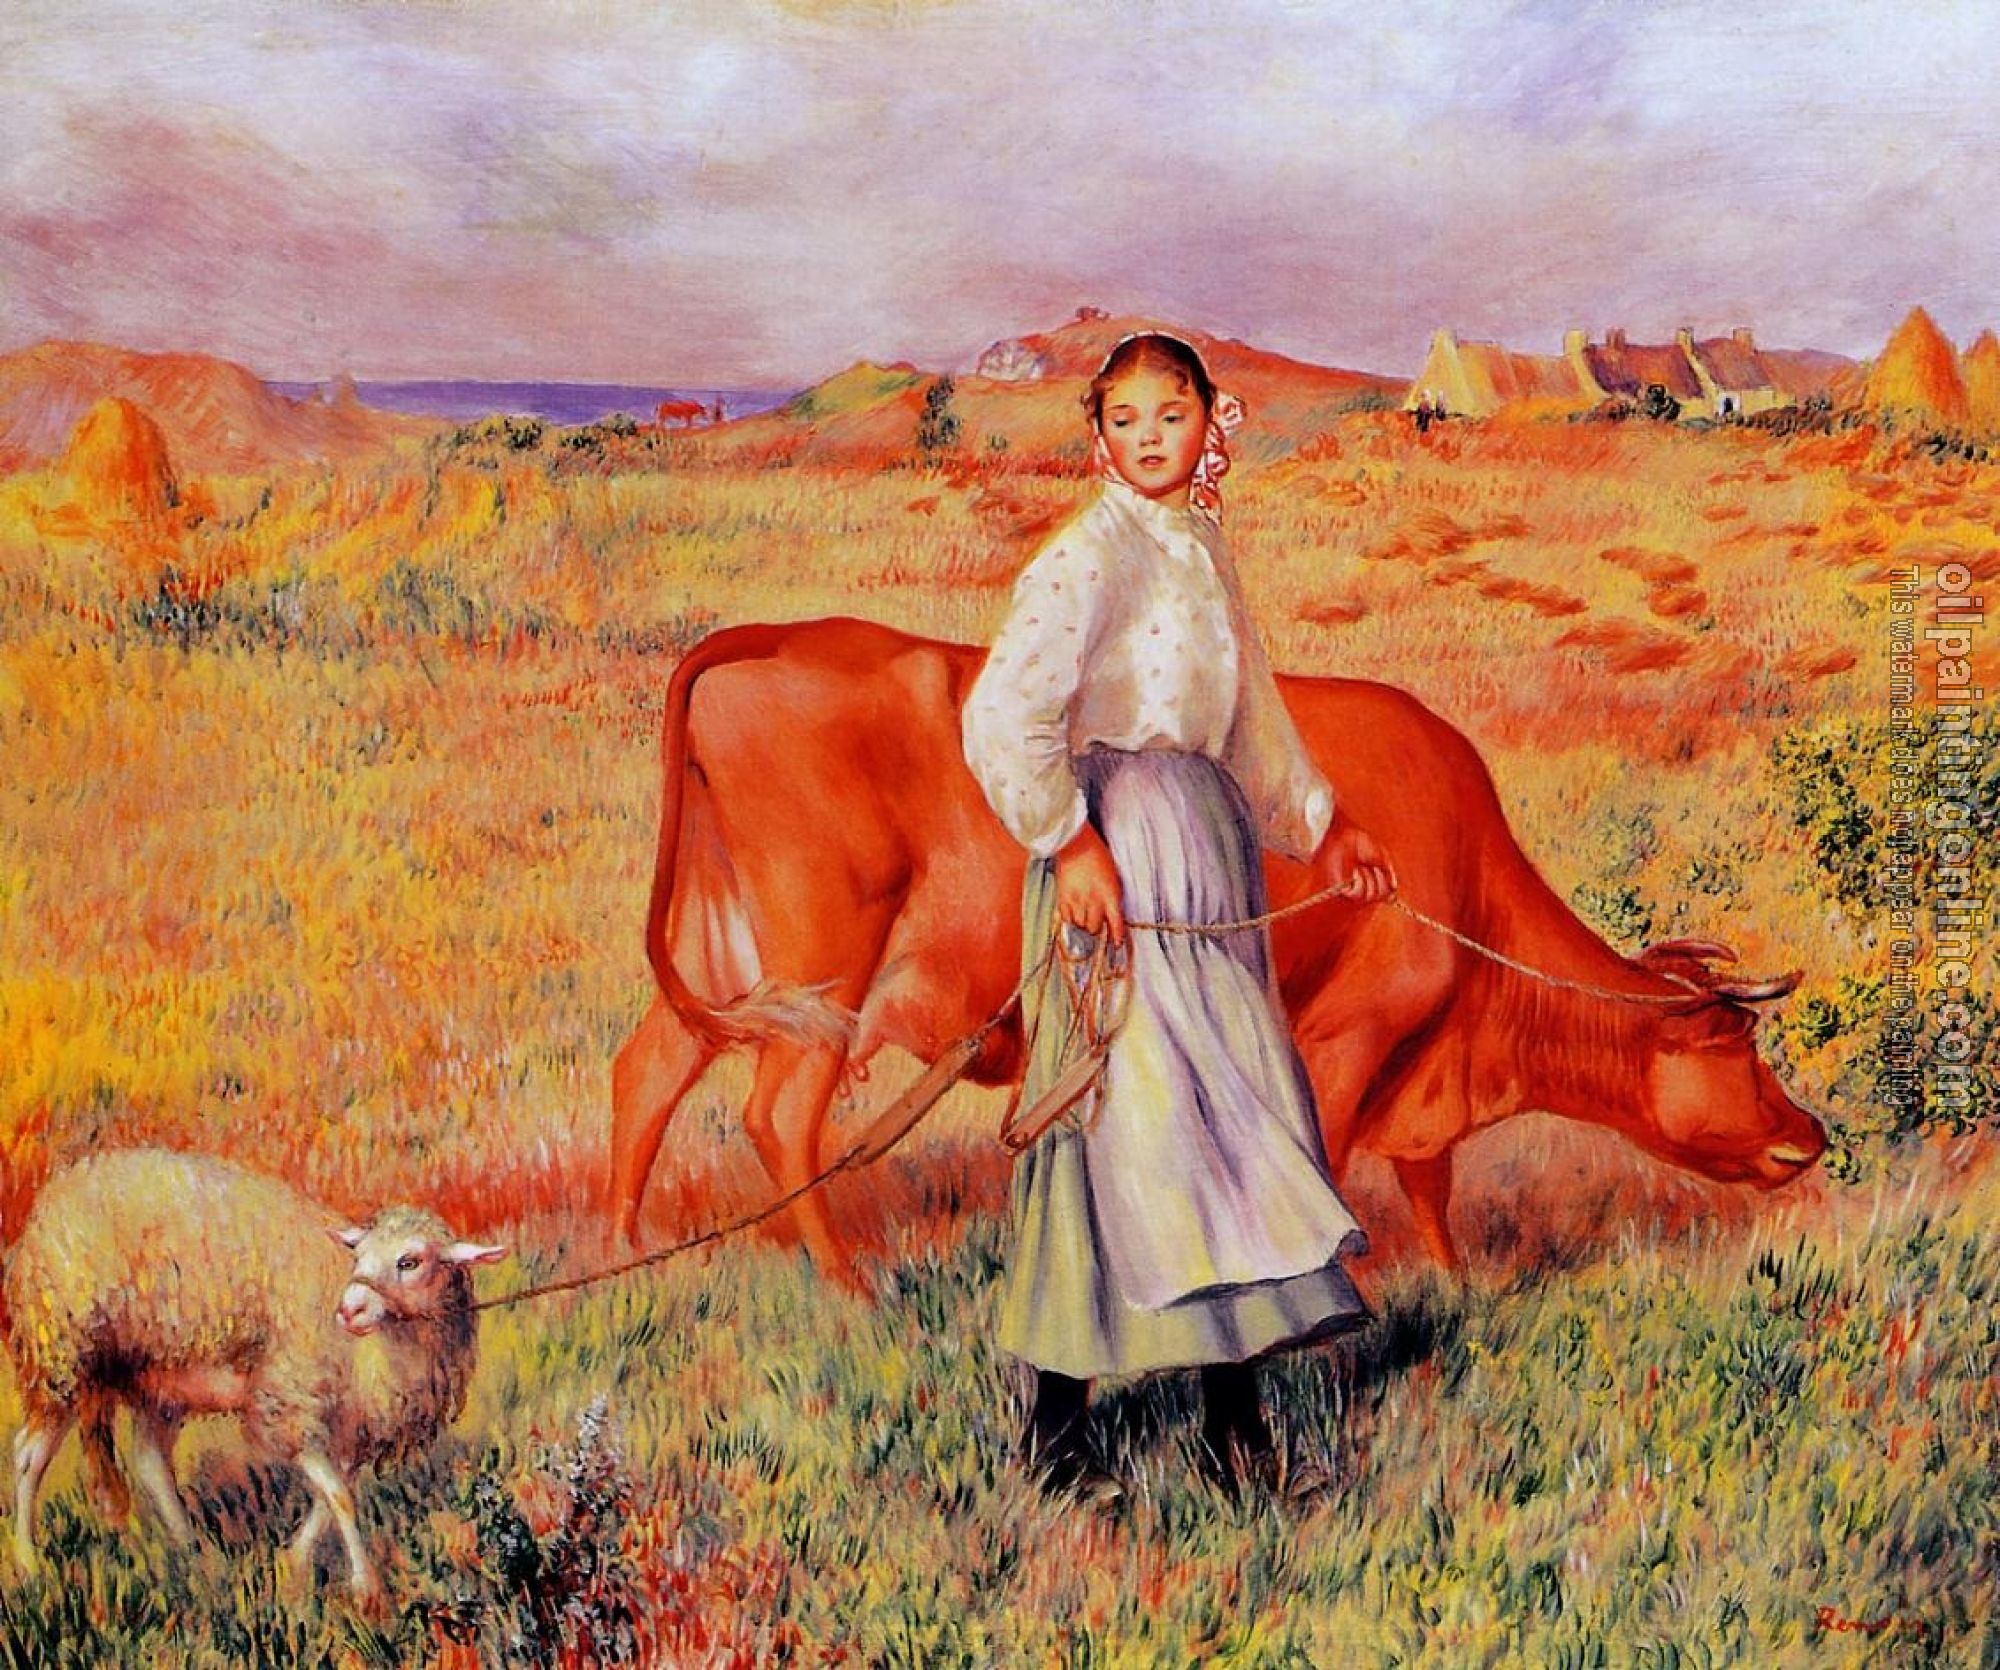 Renoir, Pierre Auguste - Shepherdess, Cow and Ewe